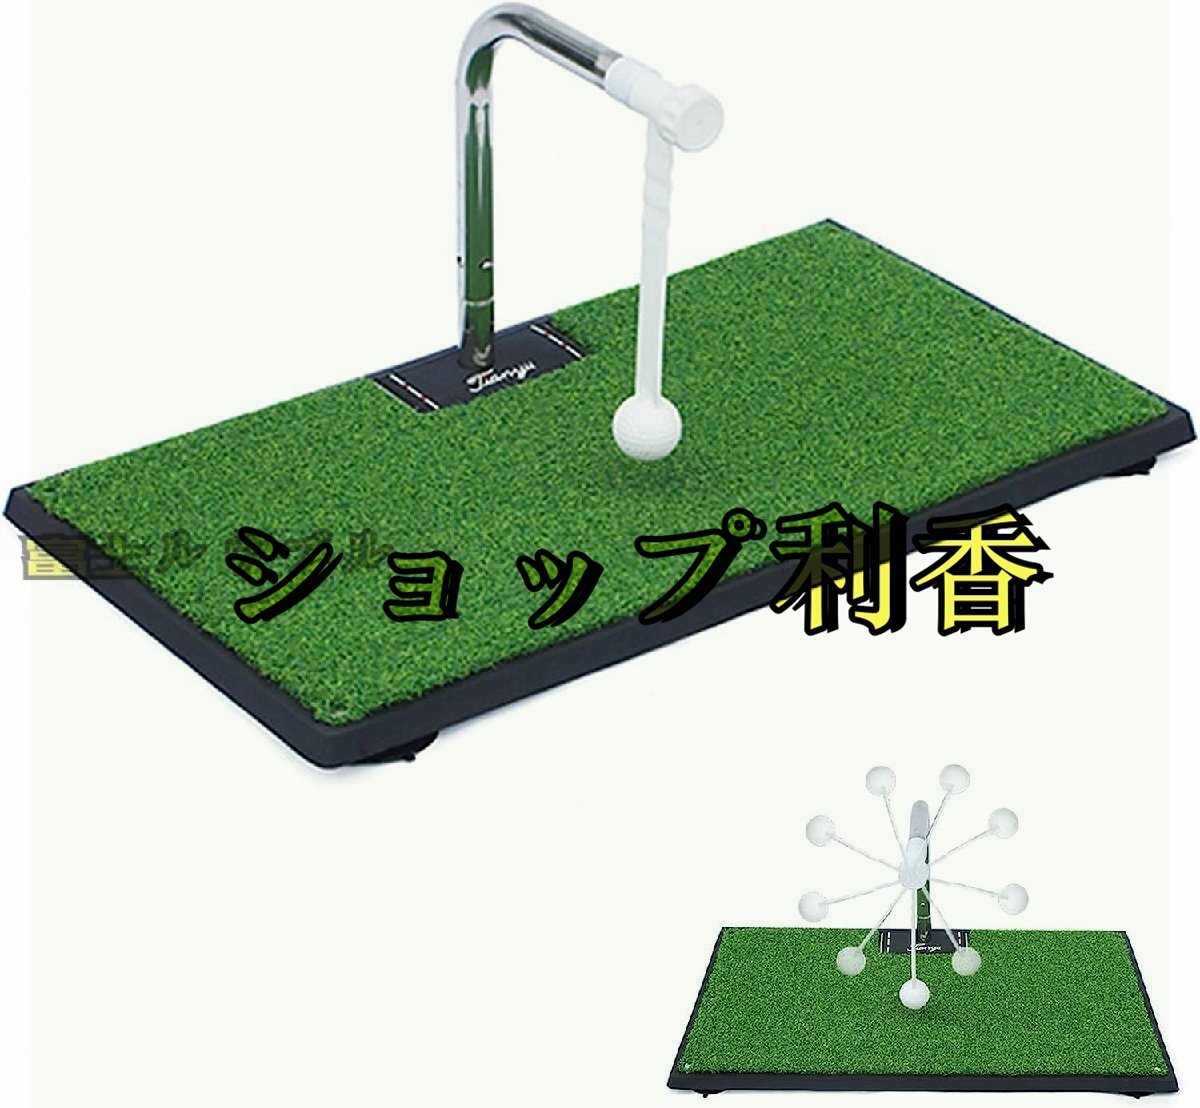 ゴルフ スイング練習用マット 360°回転 ポータブル 5段階高さ調整可能 トレーニングエイド テクニックを磨き 家庭用 ゴルフクラブ練習_画像1